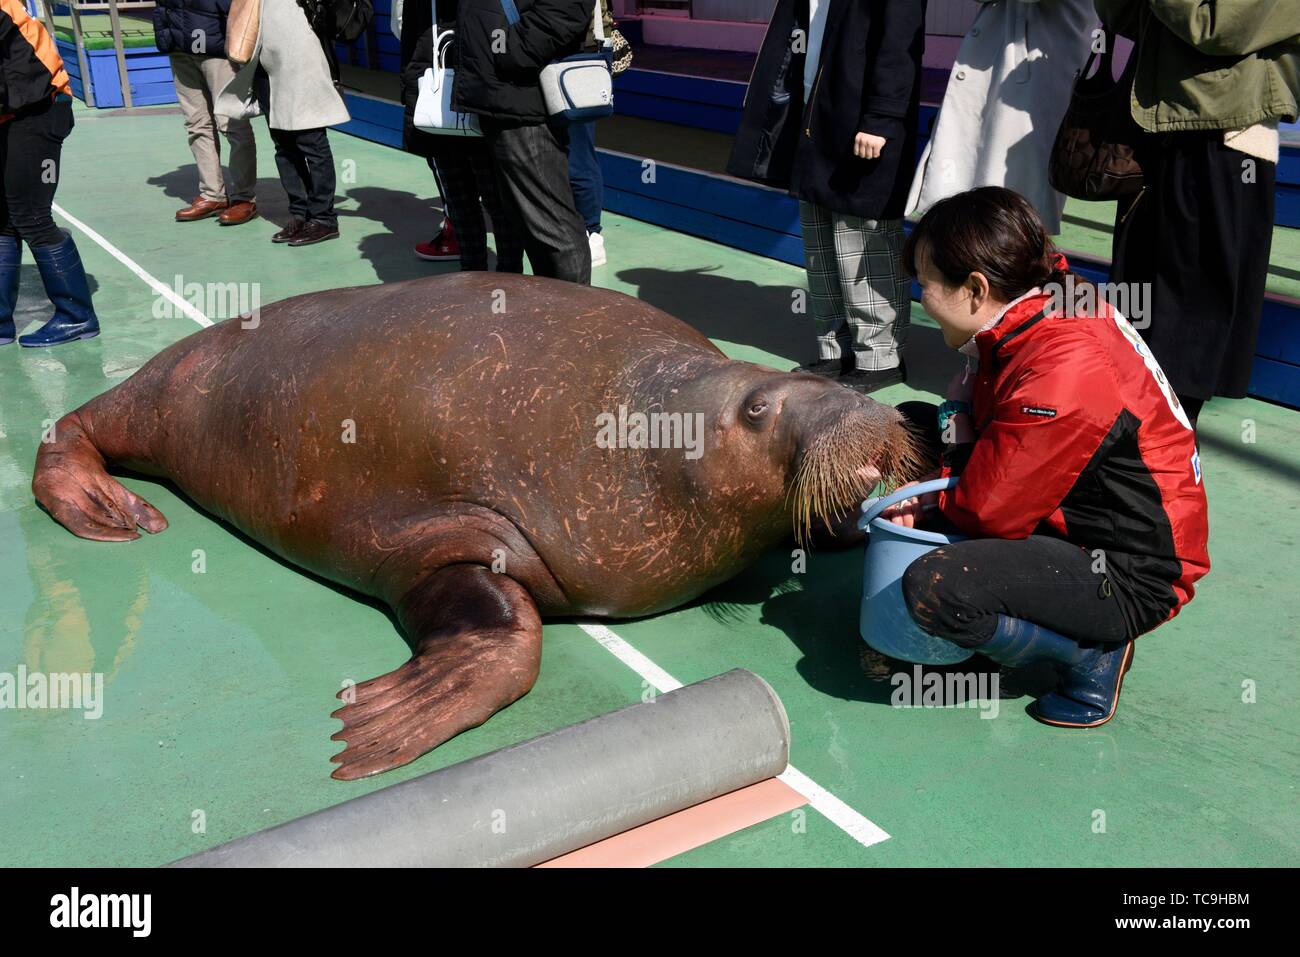 Walrus show in Toba aquarium, Japan, Asia. Stock Photo